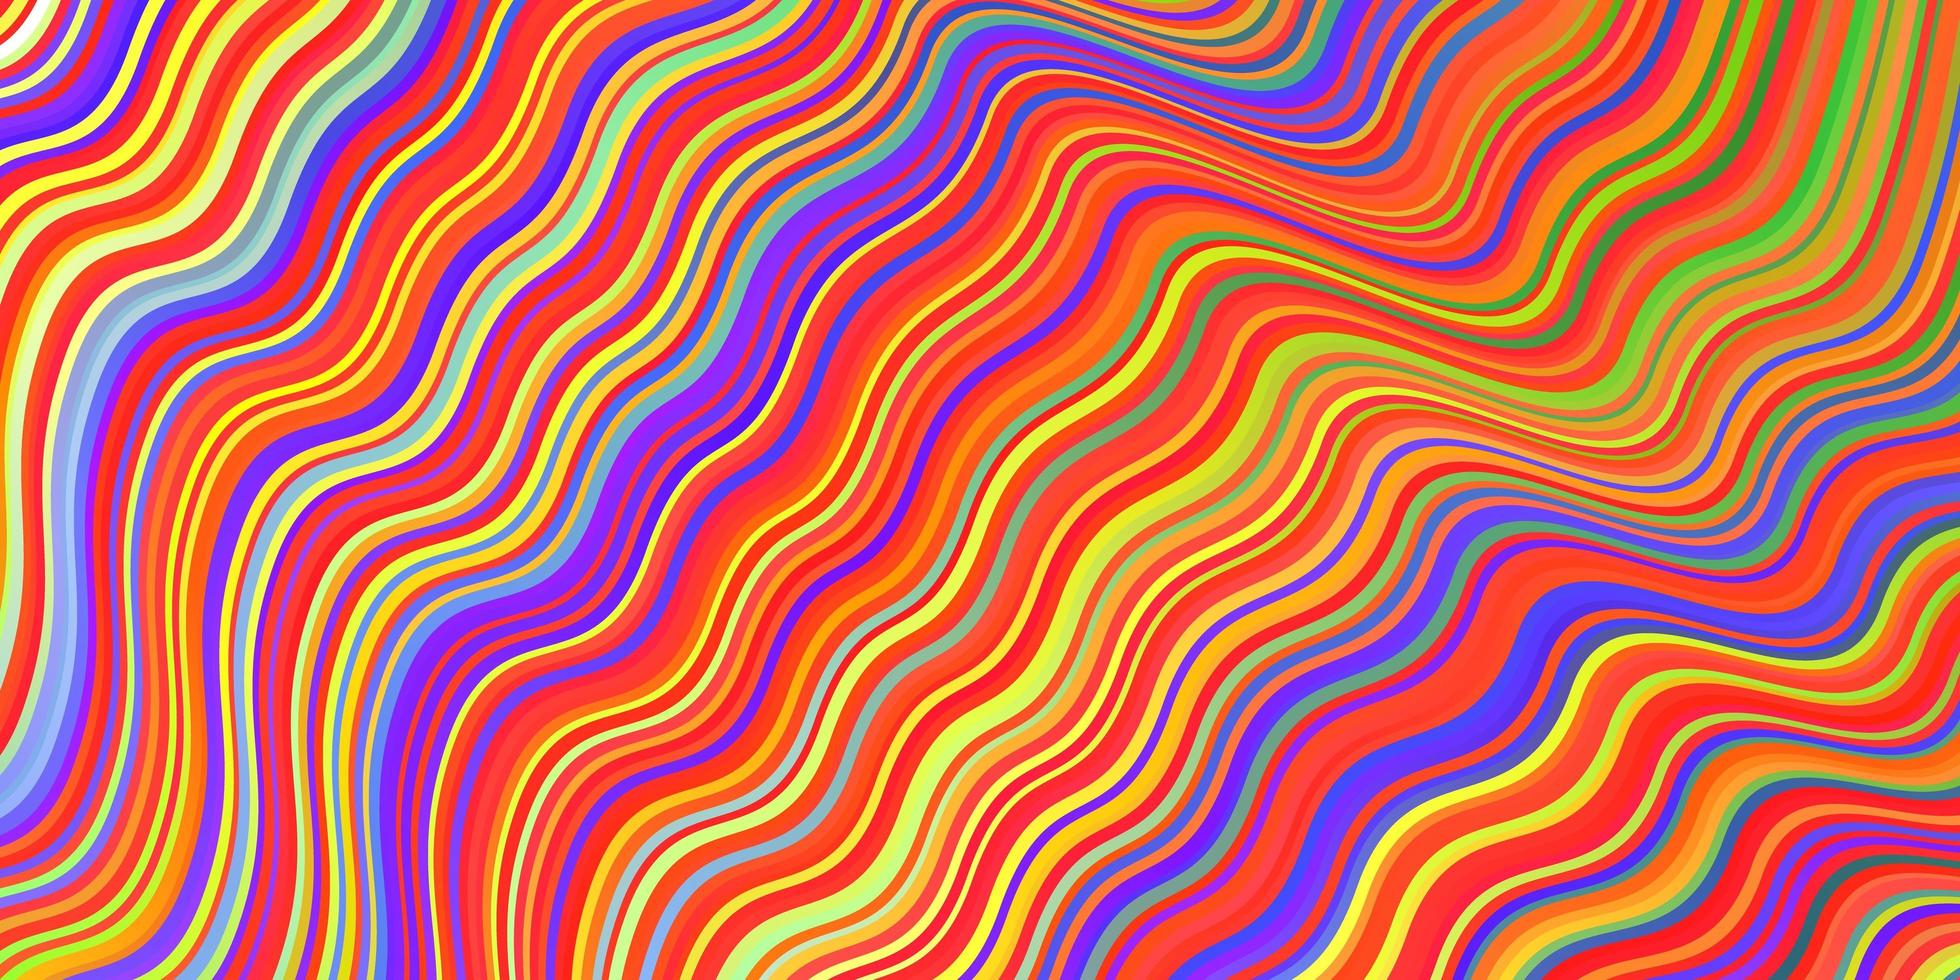 luz de fundo multicolor vector com linhas dobradas.